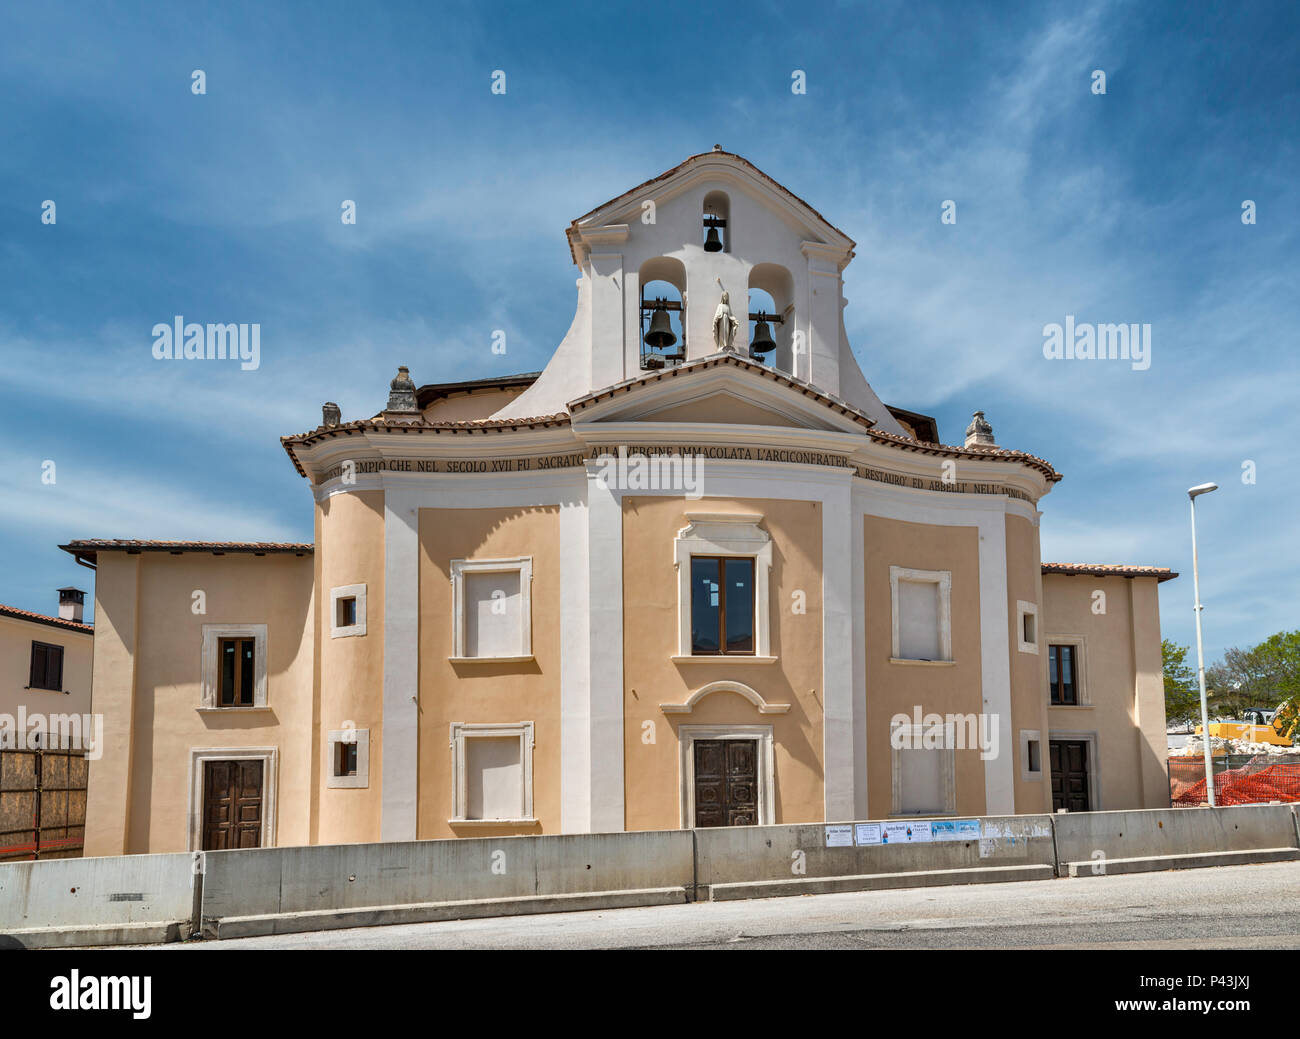 Santa Maria della Concezione, church rebuilt after 2009 earthquake, in village of Paganica, Abruzzo, Italy Stock Photo